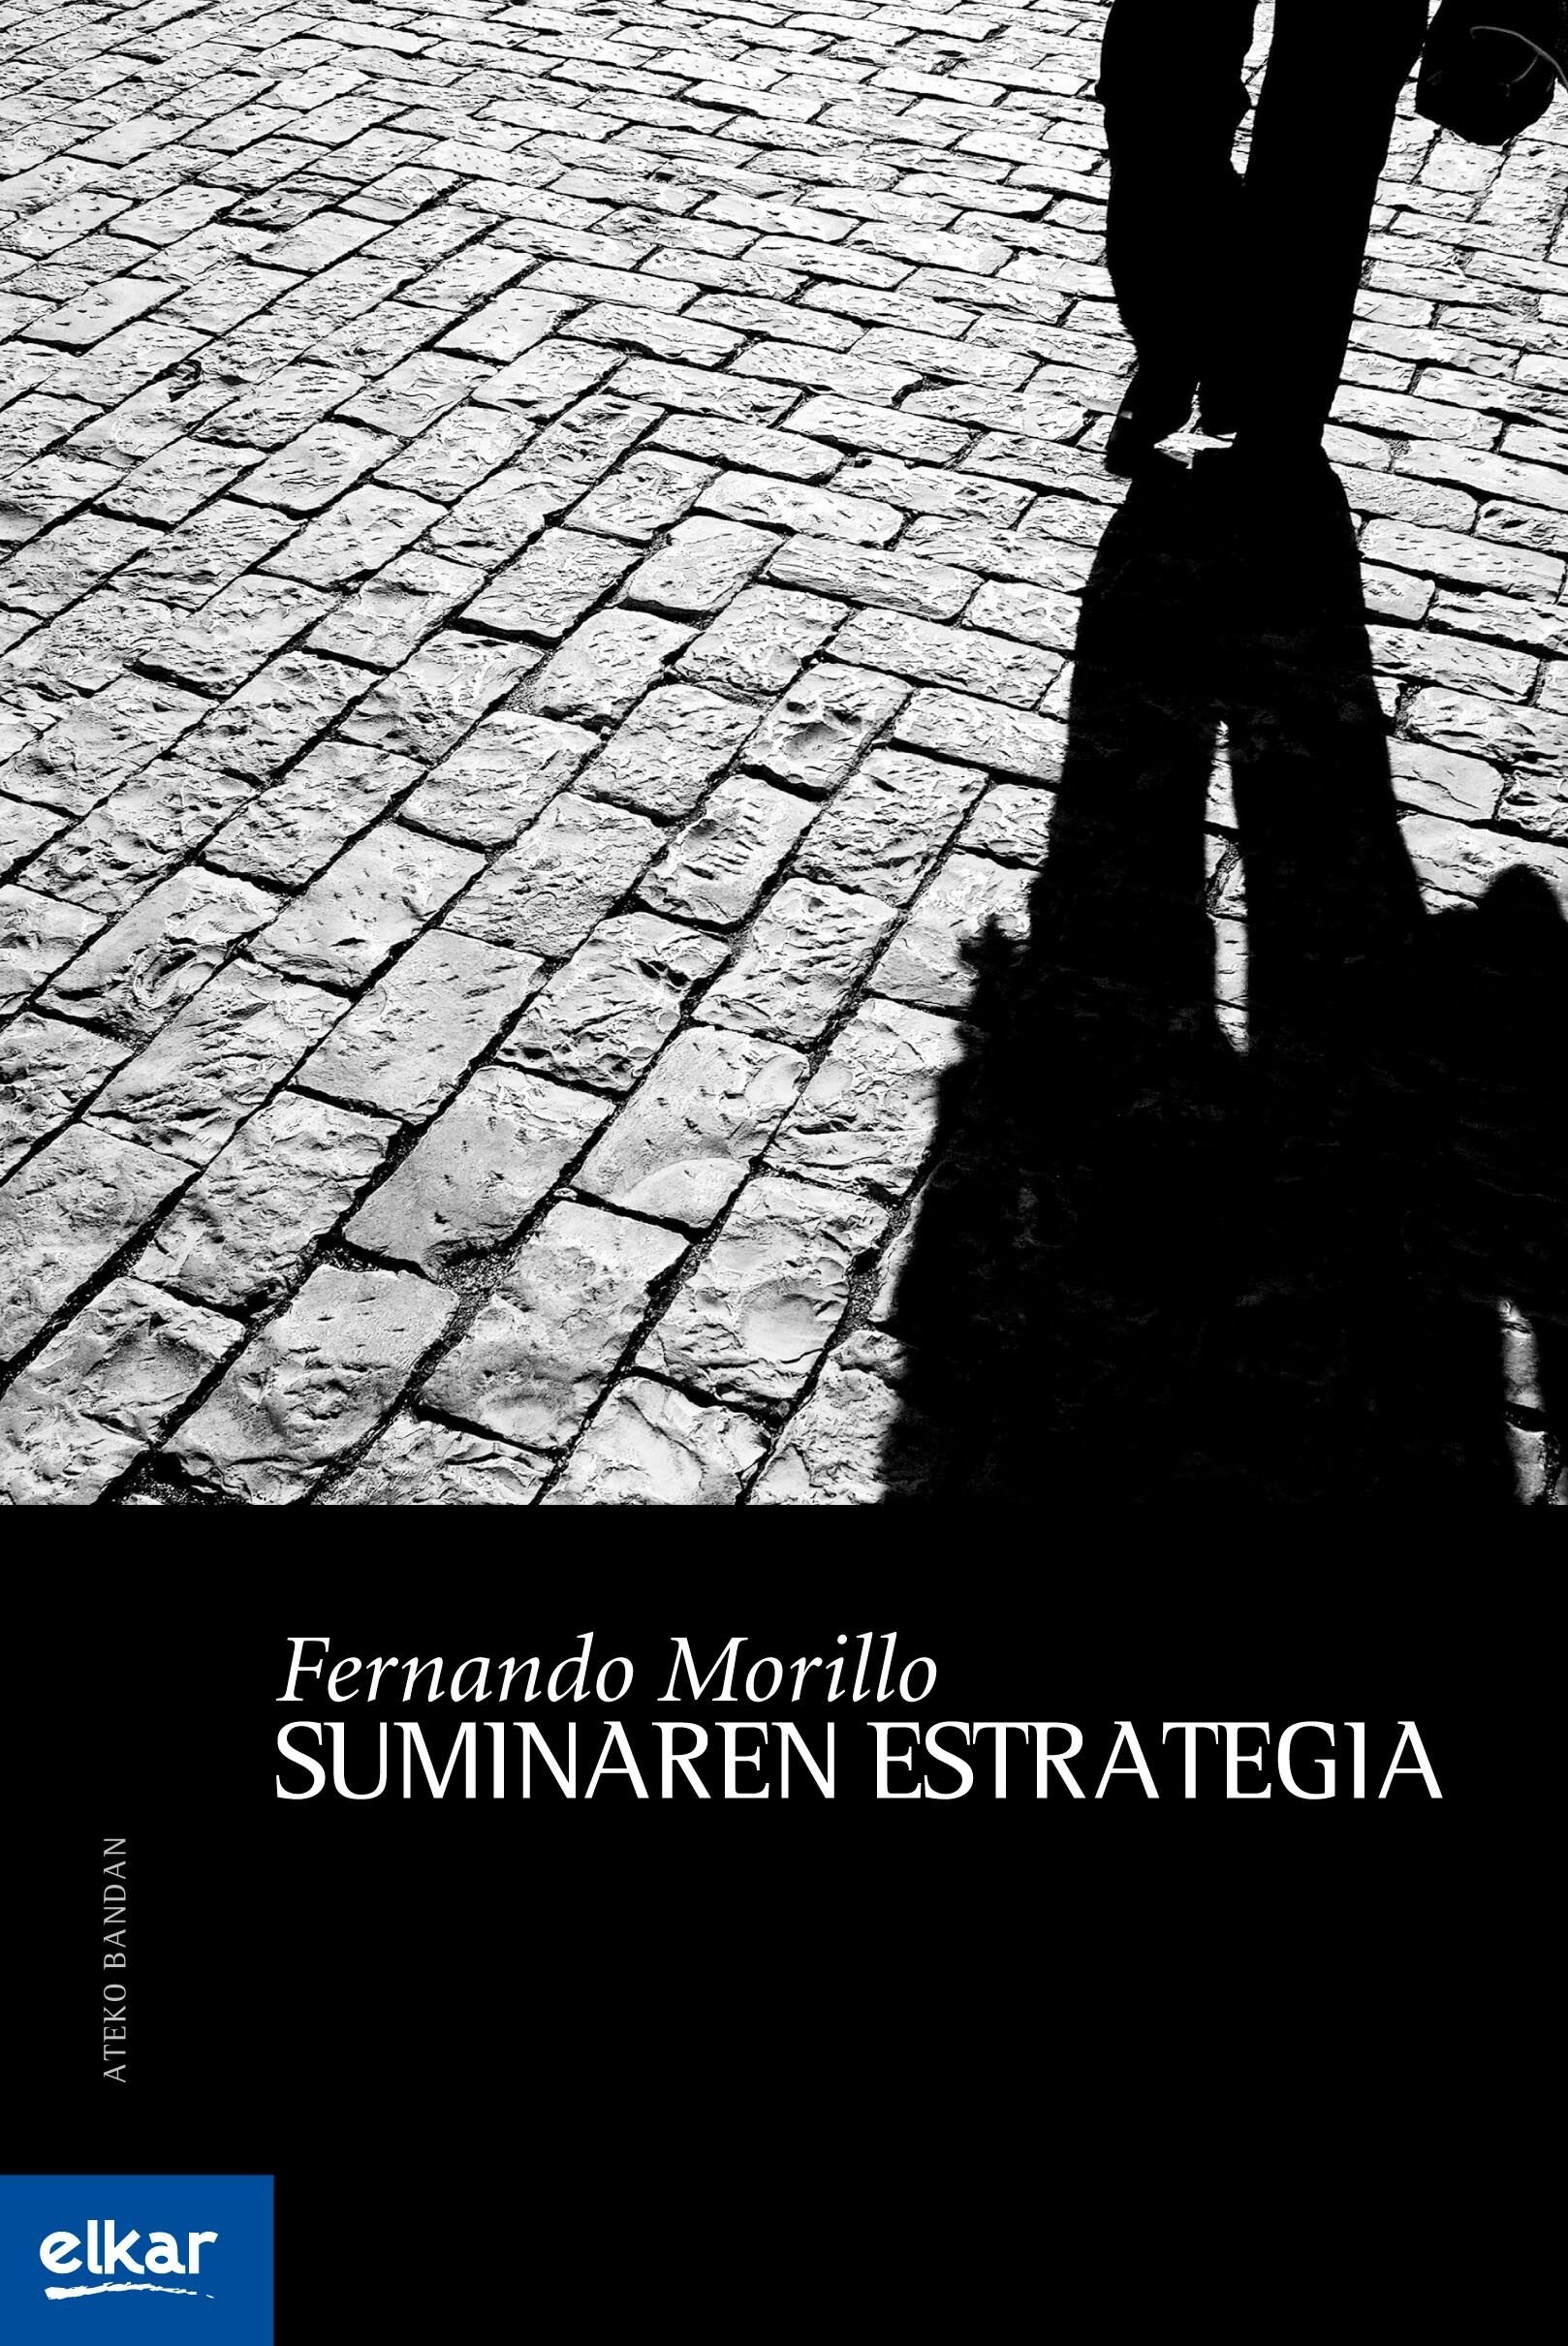 Fernando Morillo: Suminaren Estrategia (Paperback, Euskara language, 2008, Elkar)